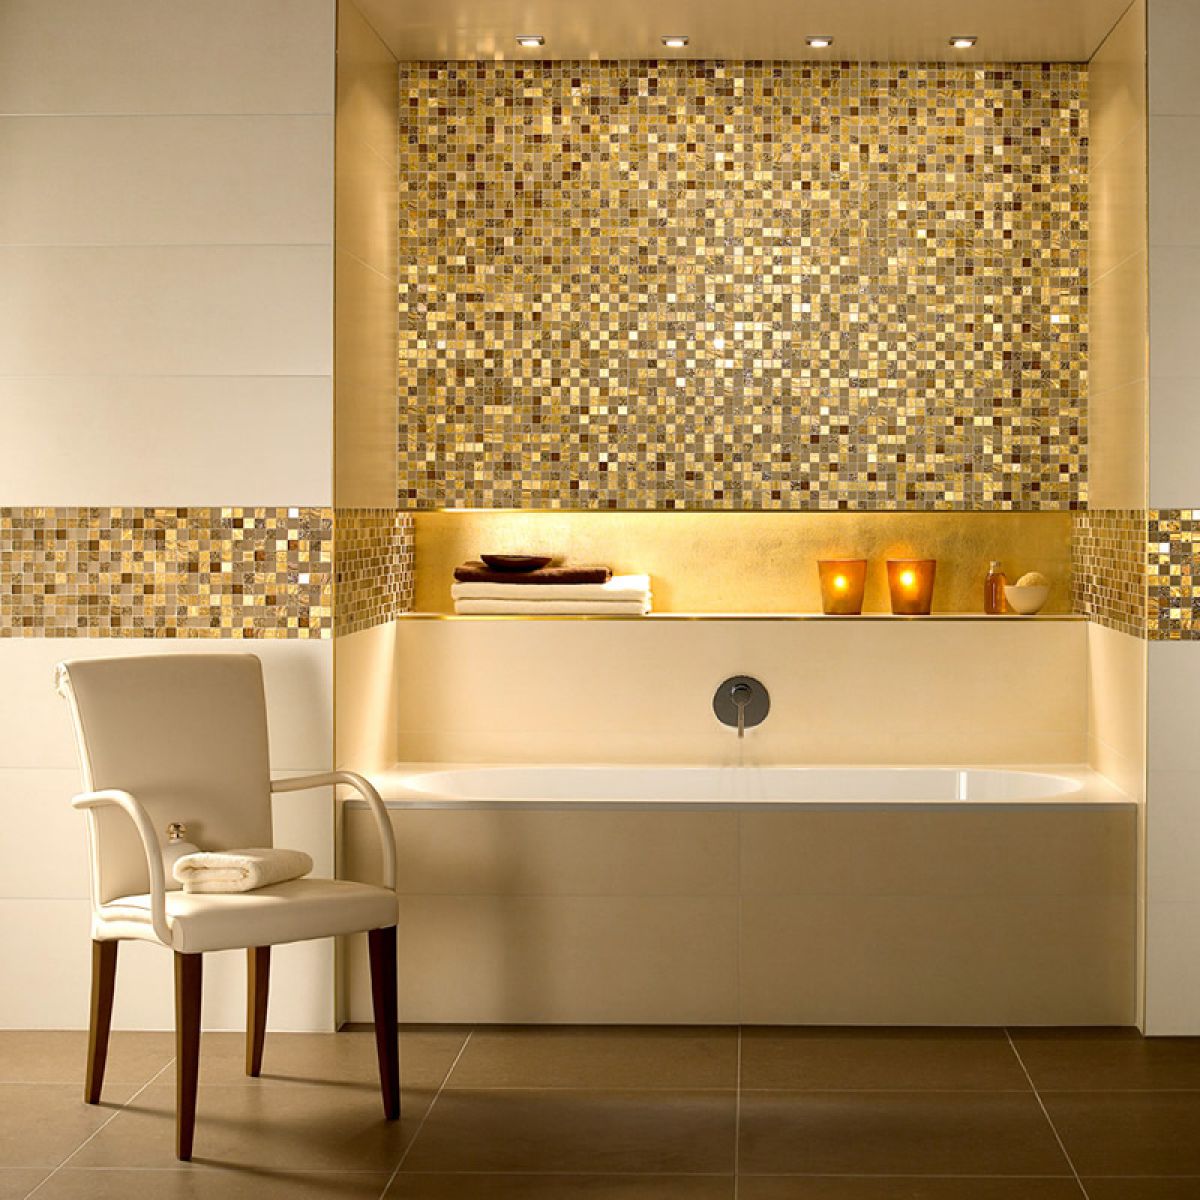 10 Best Golden Aesthetics for Your Bathroom Design